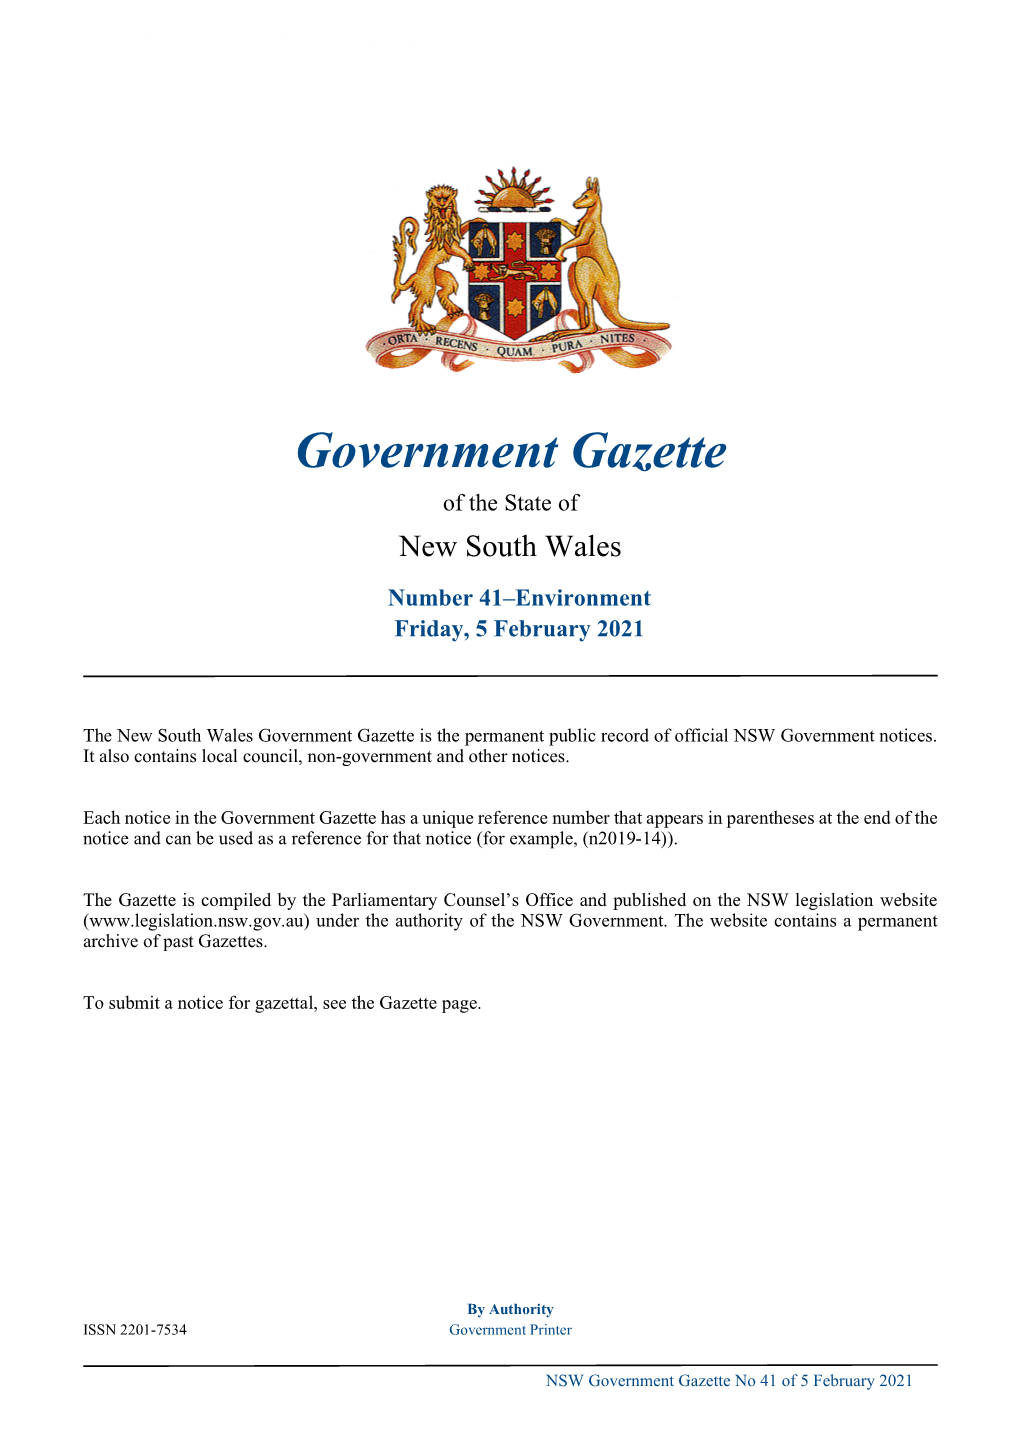 Government Gazette No 41 of Friday 5 February 2021